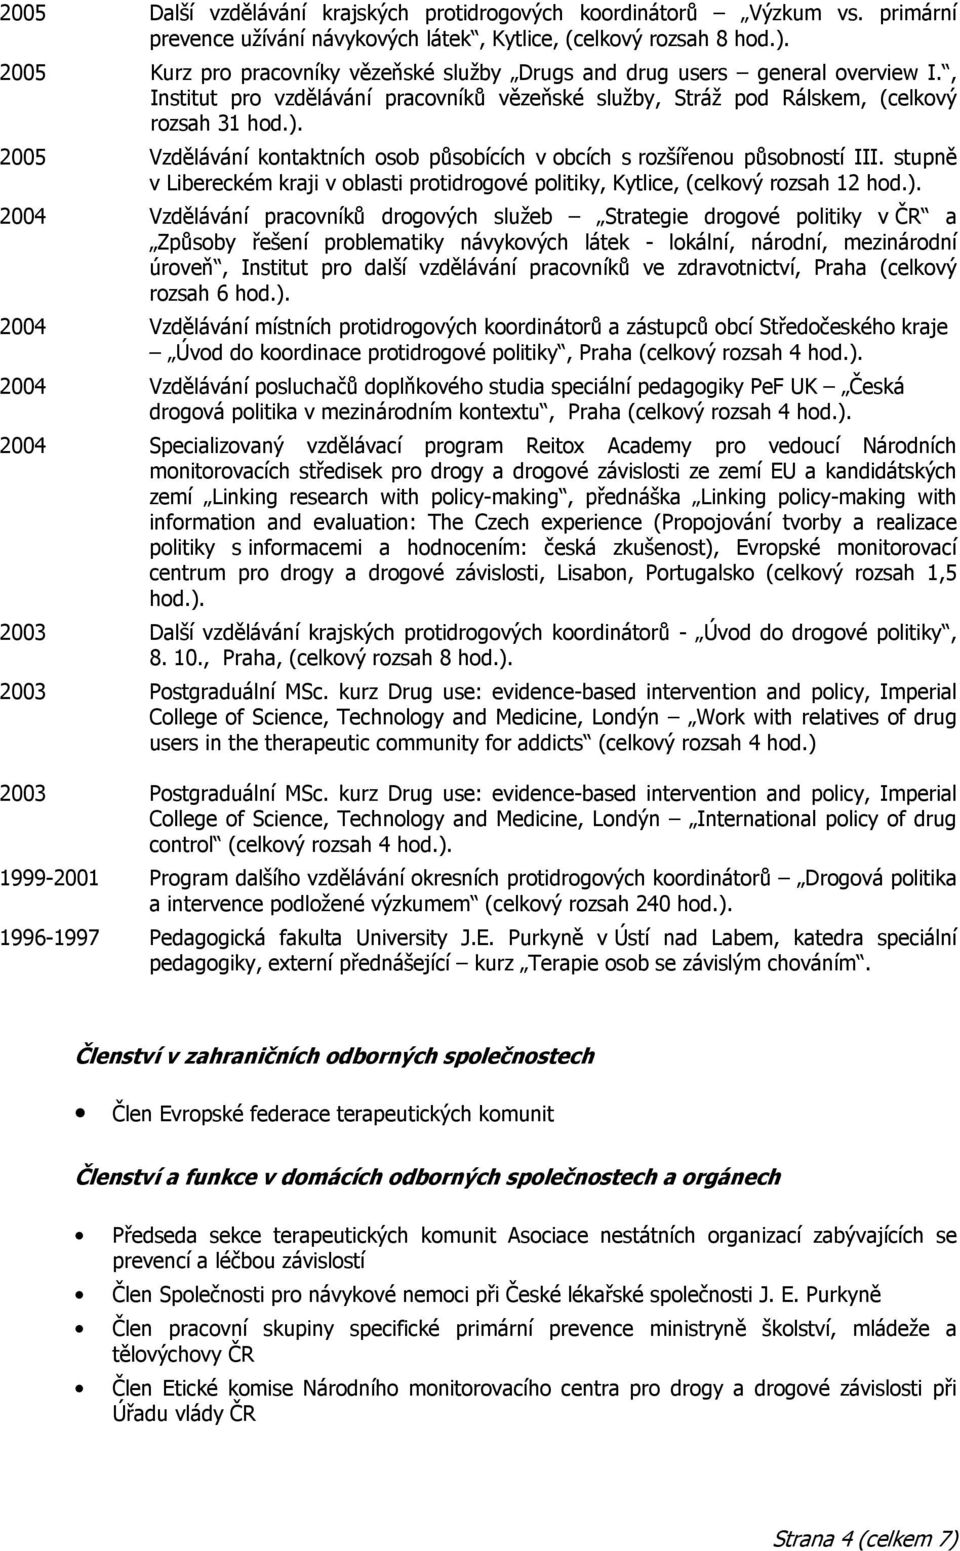 2005 Vzdělávání kontaktních osob působících v obcích s rozšířenou působností III. stupně v Libereckém kraji v oblasti protidrogové politiky, Kytlice, (celkový rozsah 12 hod.).